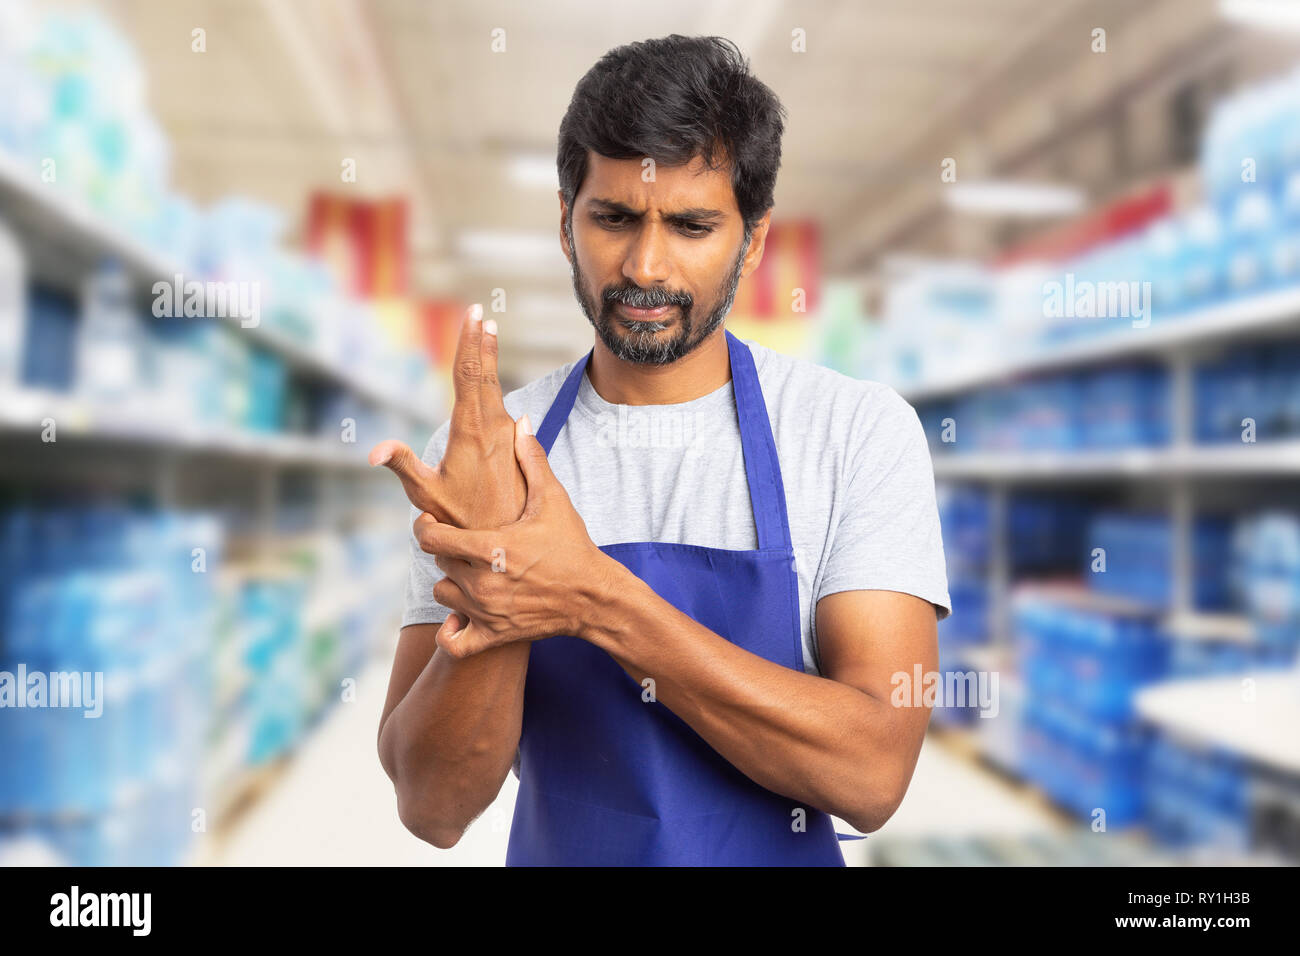 Sb-Warenhaus oder Supermarkt indischen männlichen Mitarbeiter berühren Handgelenk verstaucht wie körperliche Anstrengung schmerzen Konzept Stockfoto